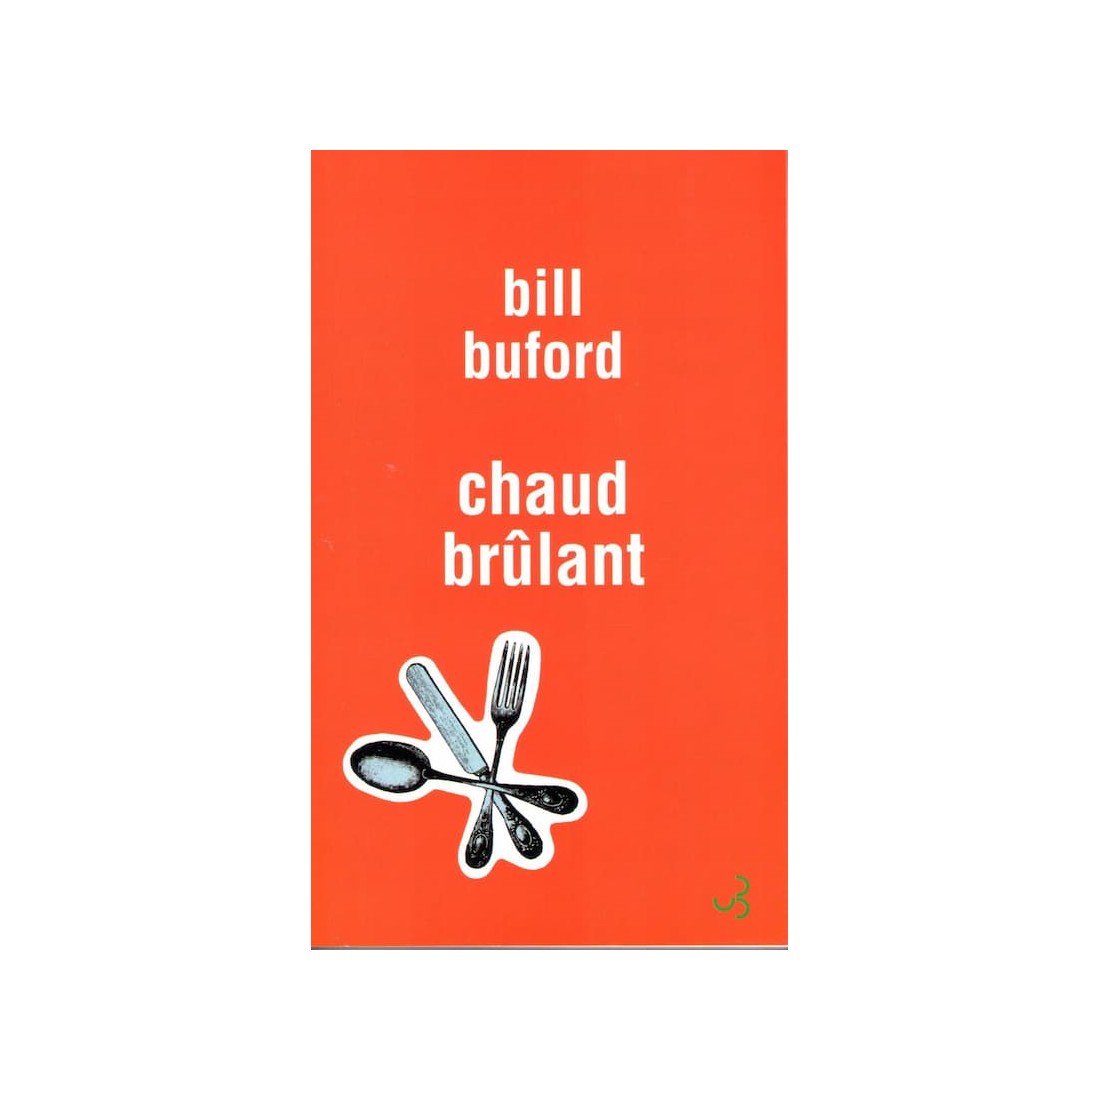 Chaud brûlant - Roman de Bill Buford - Ocazlivres.com